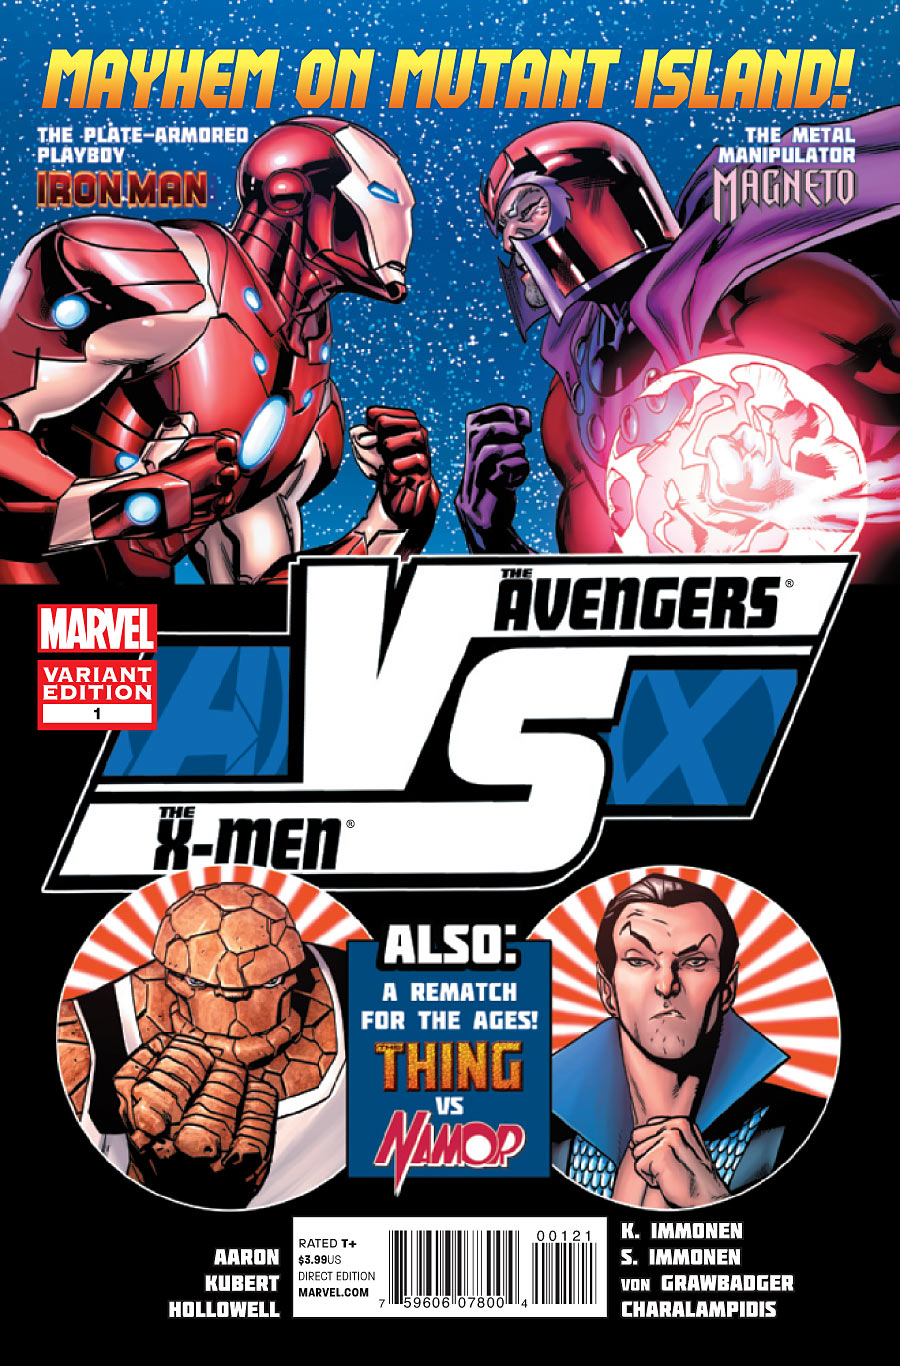 Preview de AvX Versus #1 - Avengers Vs X-Men